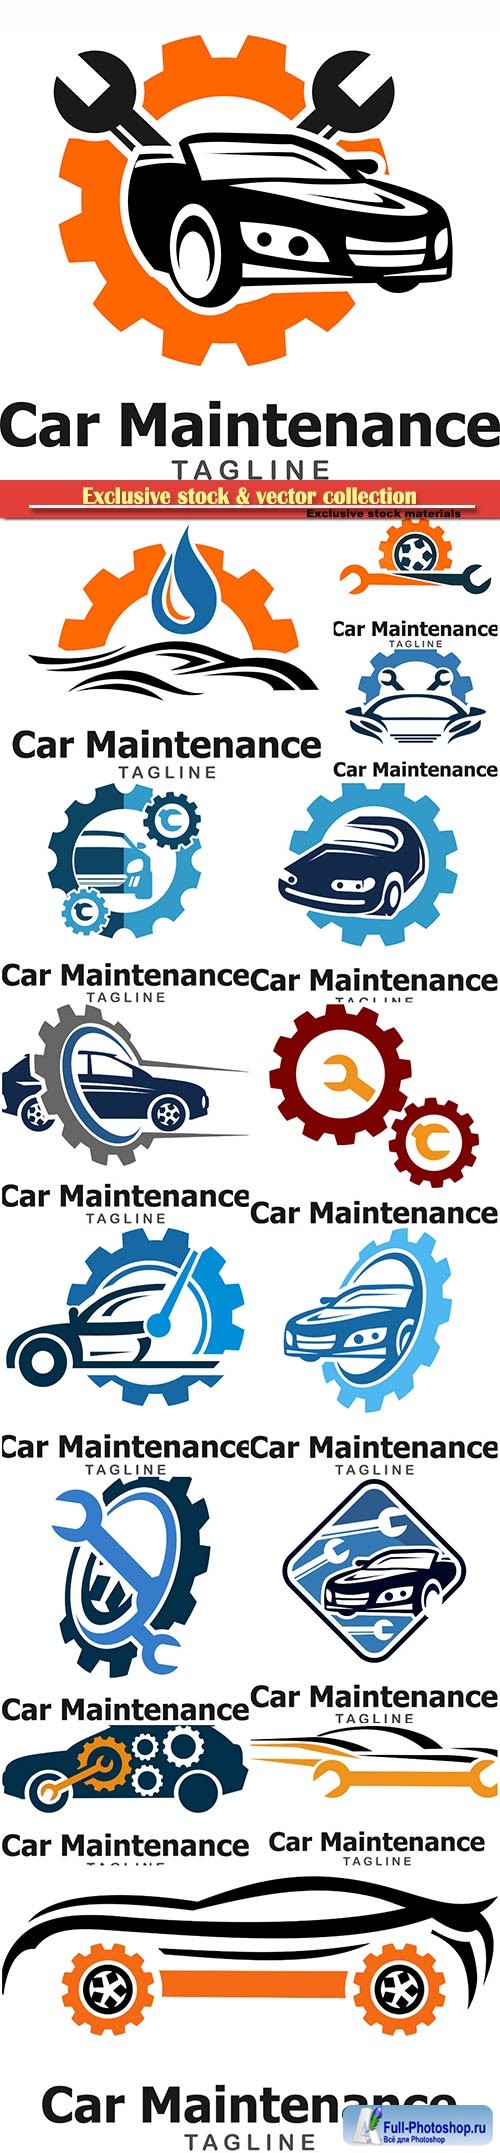 Car maintenance and repair vector logo